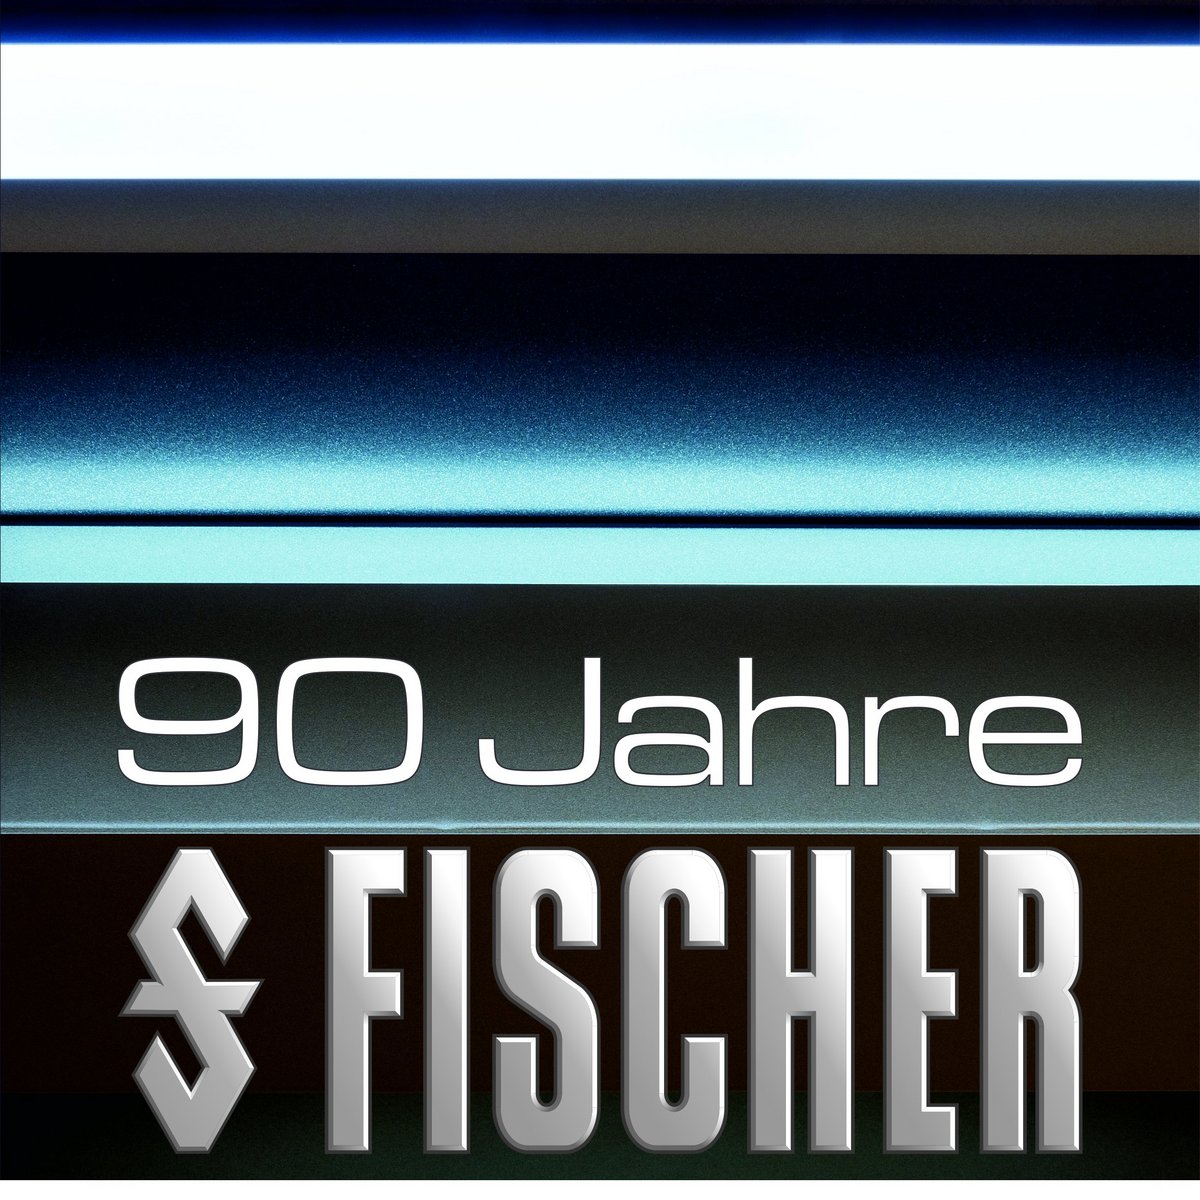 90 years of Fischer